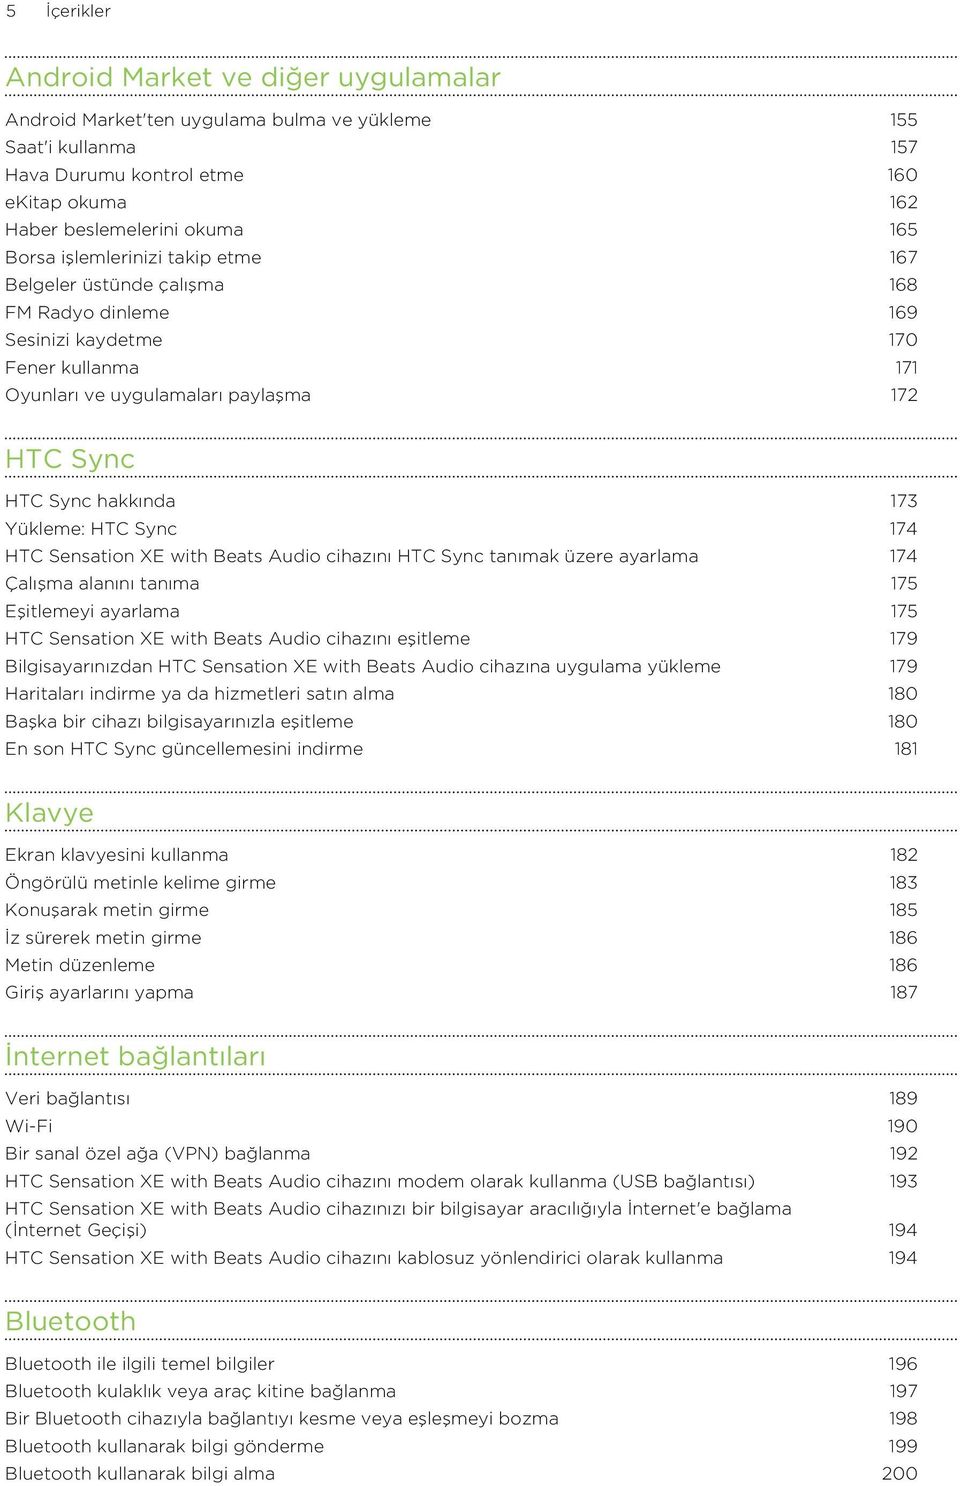 HTC Sync 174 HTC Sensation XE with Beats Audio cihazını HTC Sync tanımak üzere ayarlama 174 Çalışma alanını tanıma 175 Eşitlemeyi ayarlama 175 HTC Sensation XE with Beats Audio cihazını eşitleme 179